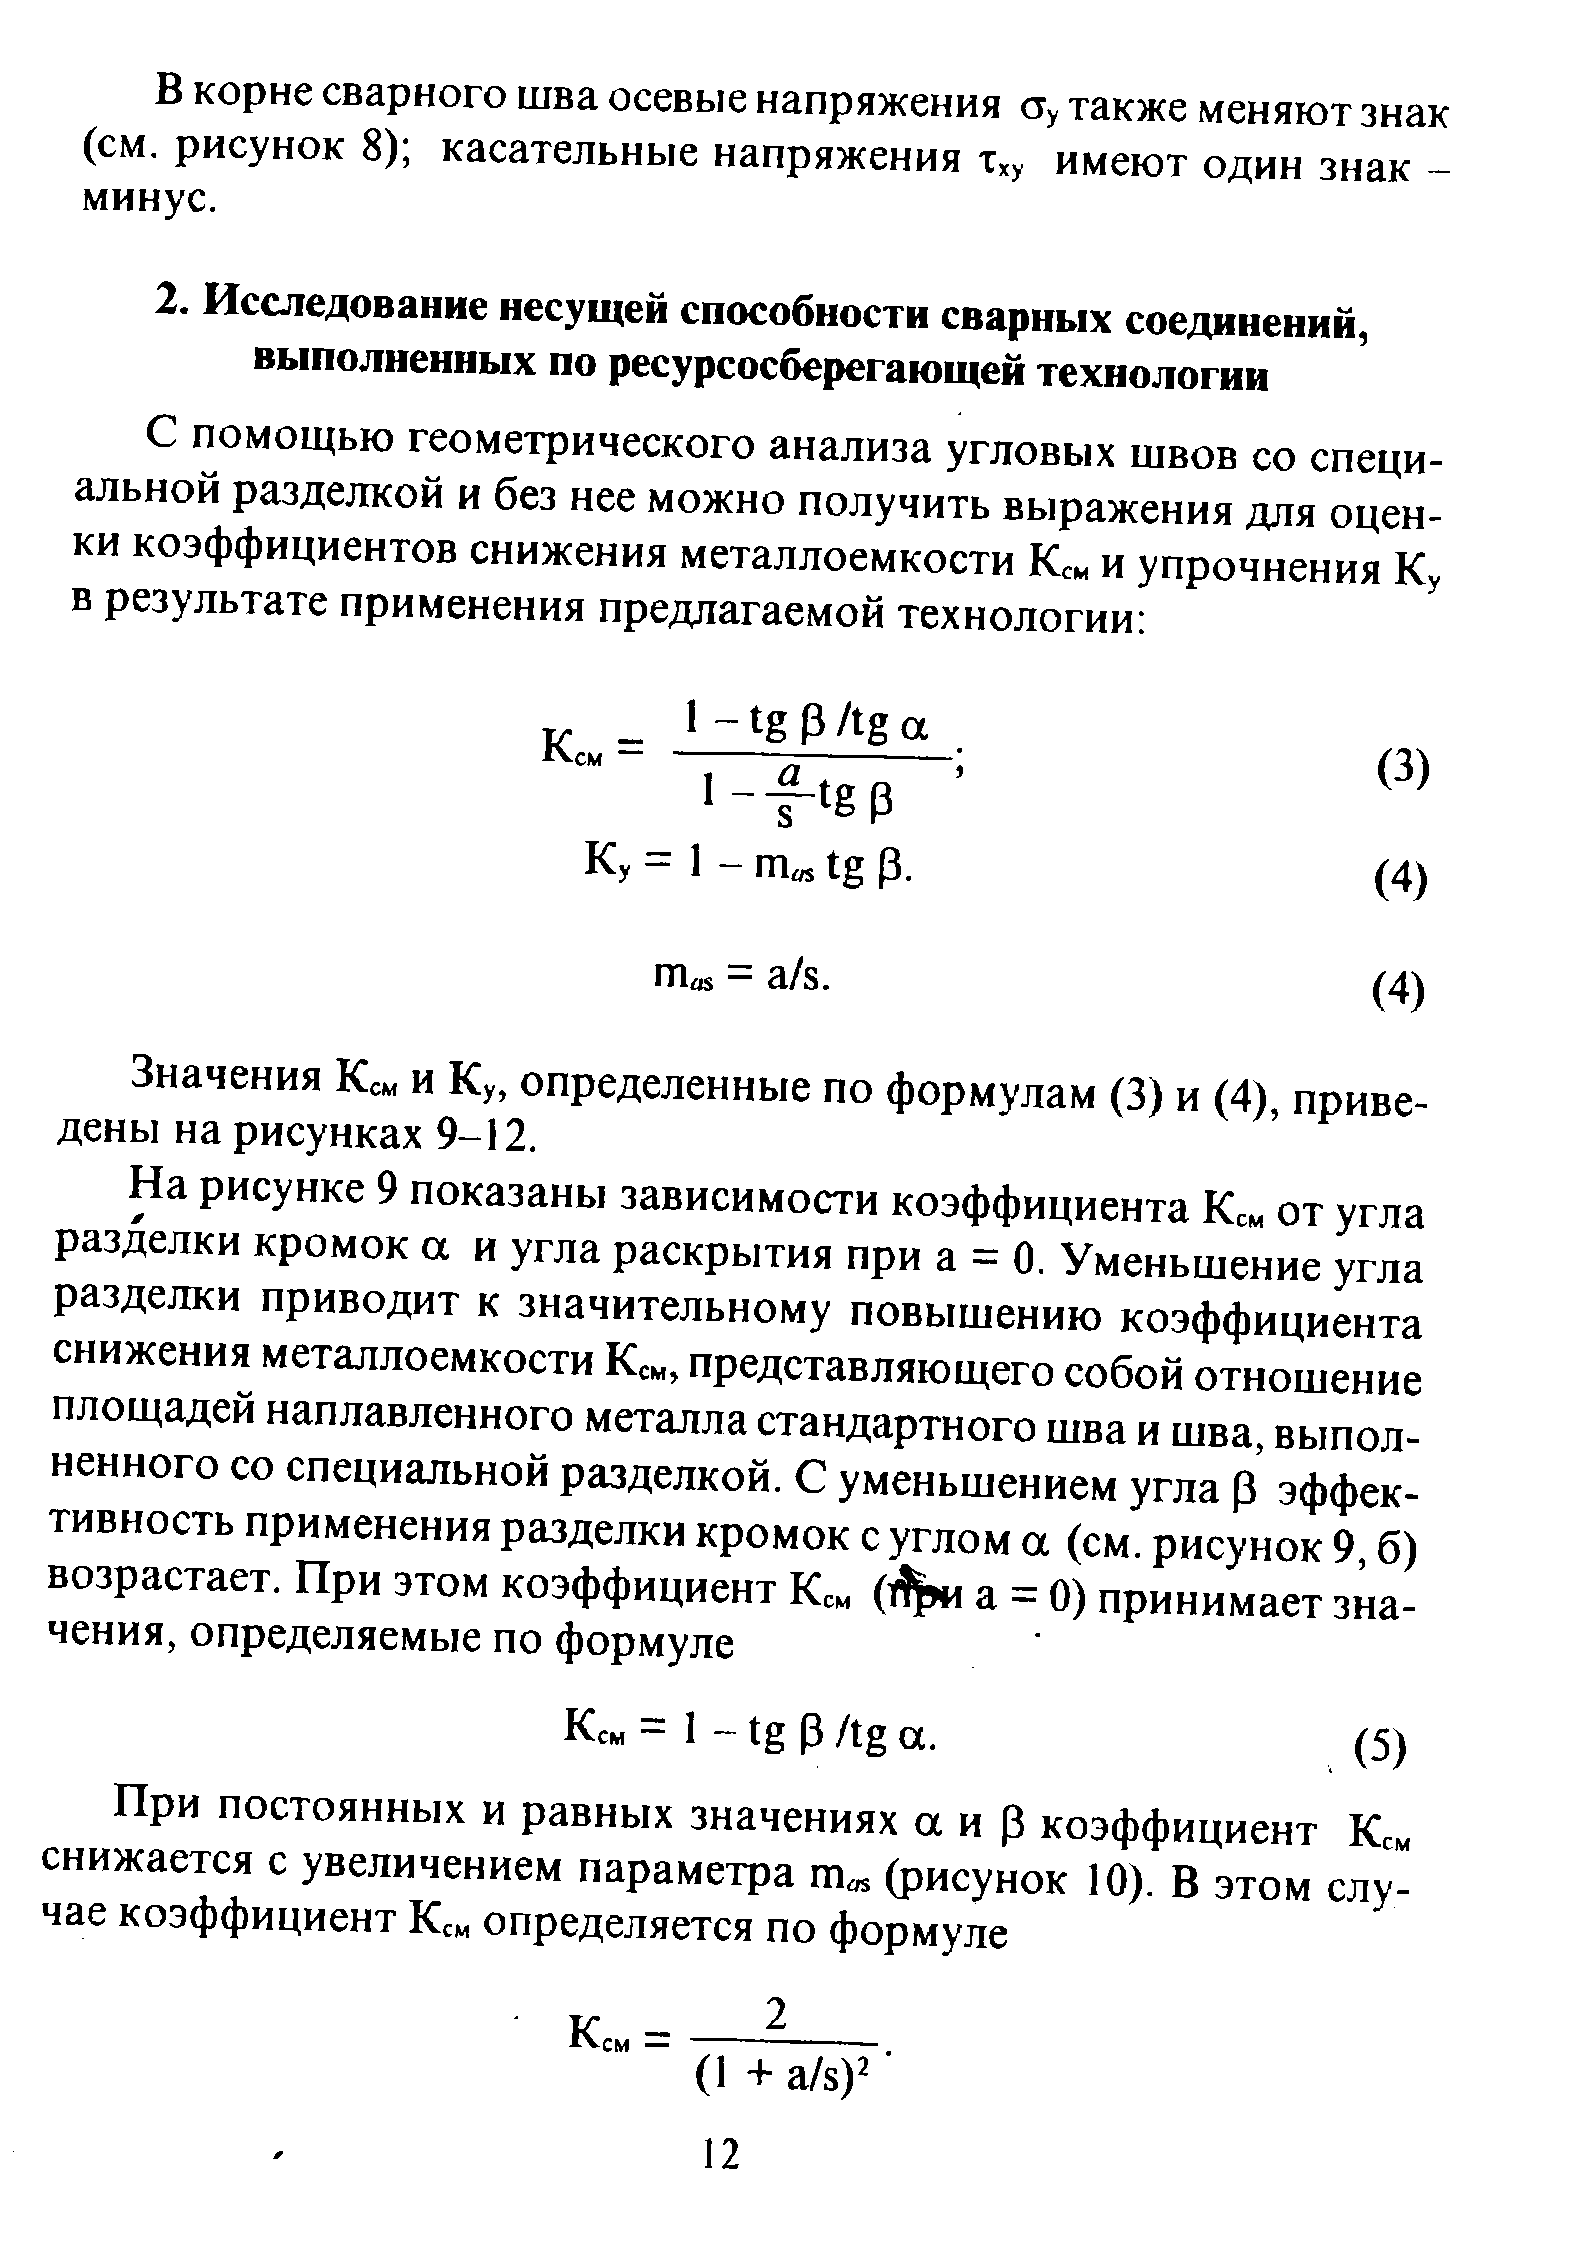 Значения Кем и Ку, определенные по формулам (3) и (4), приведены на рисунках 9-12.